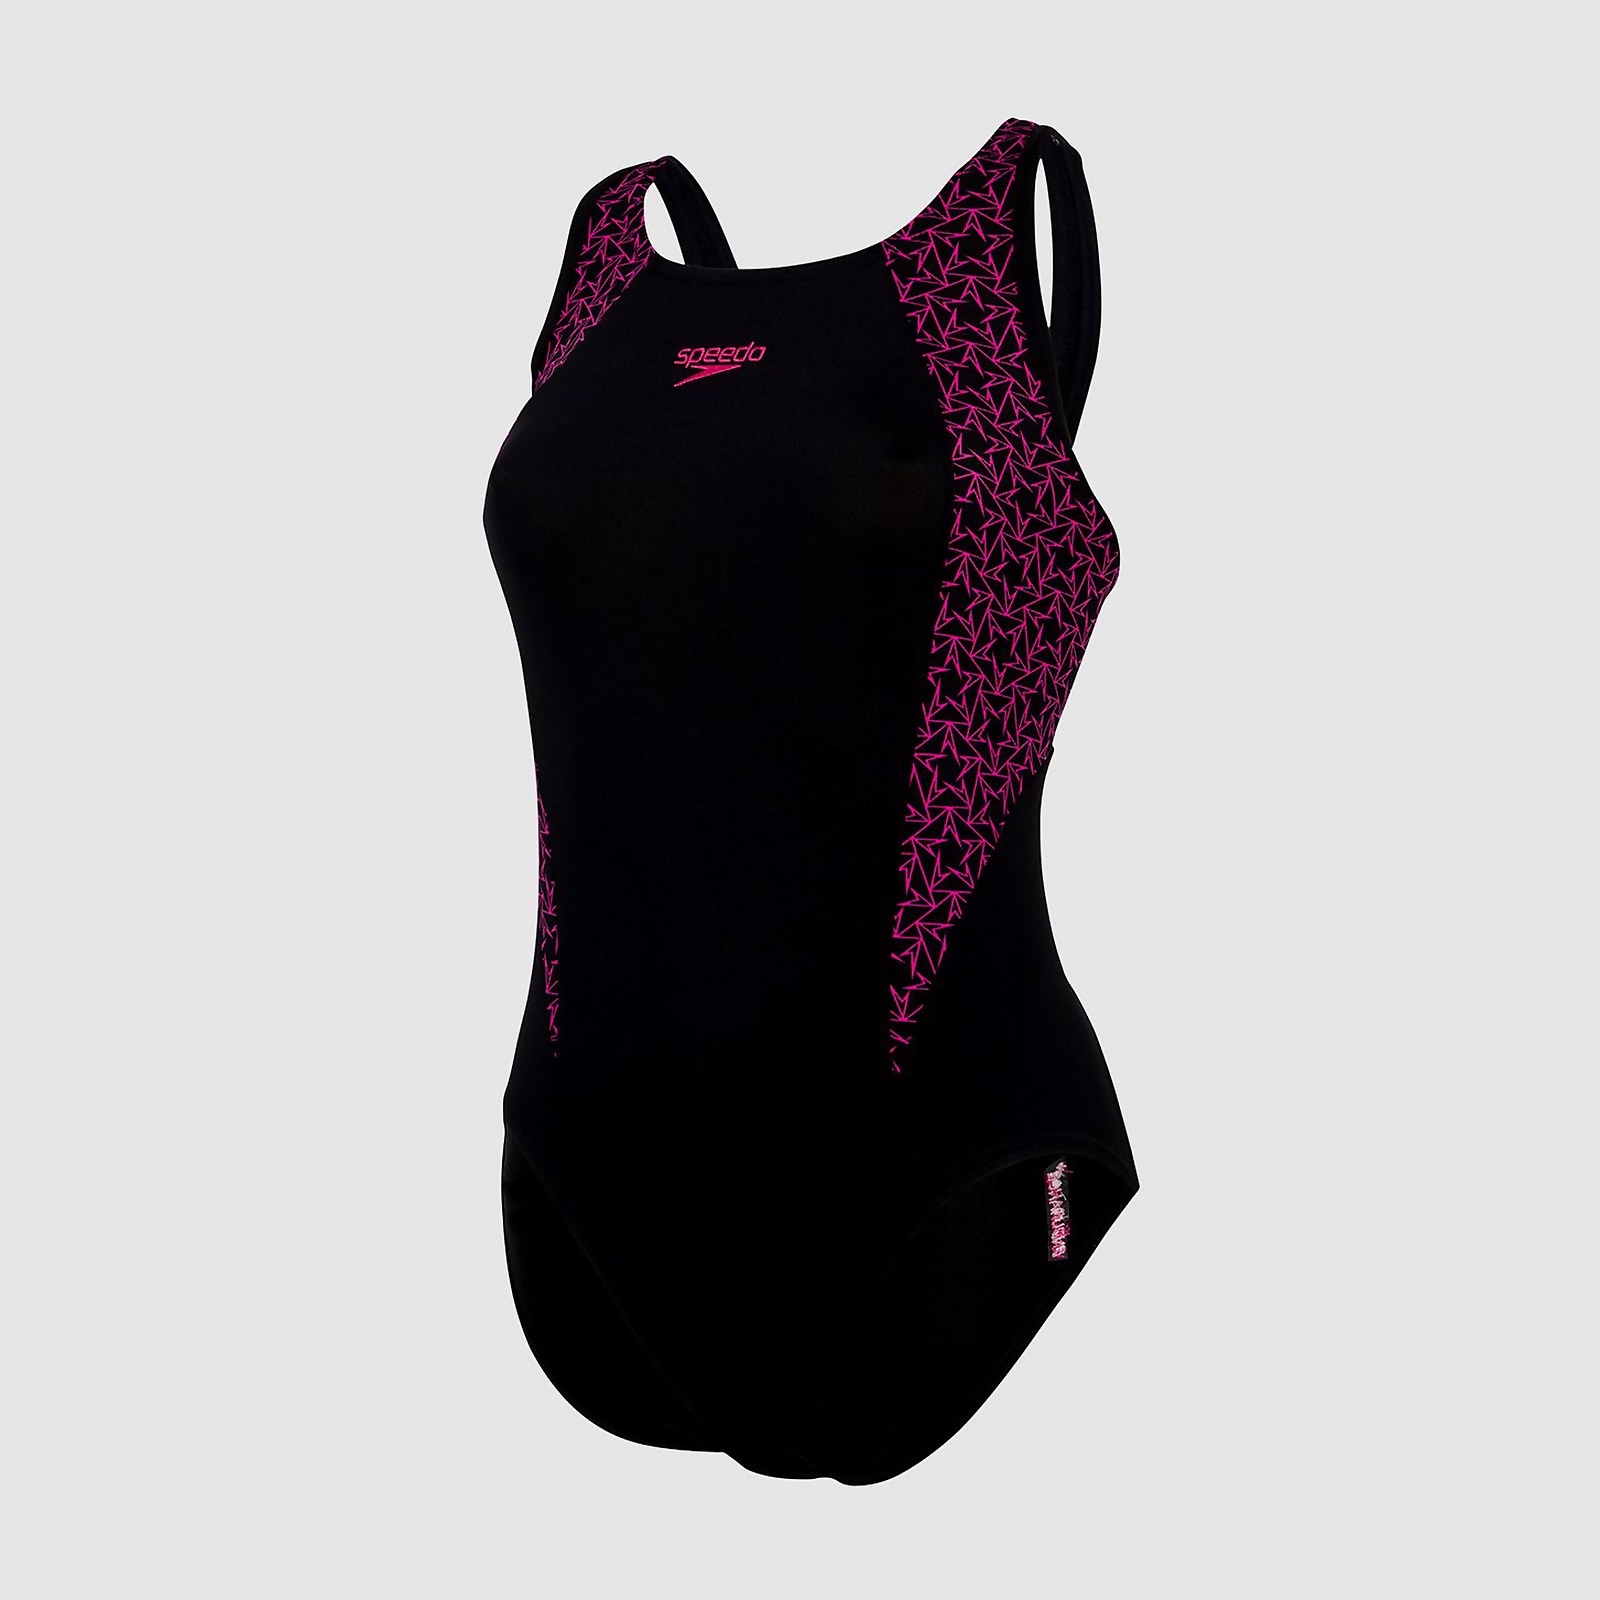 Women's Boomstar Splice Flyback Swimsuit Black/Pink